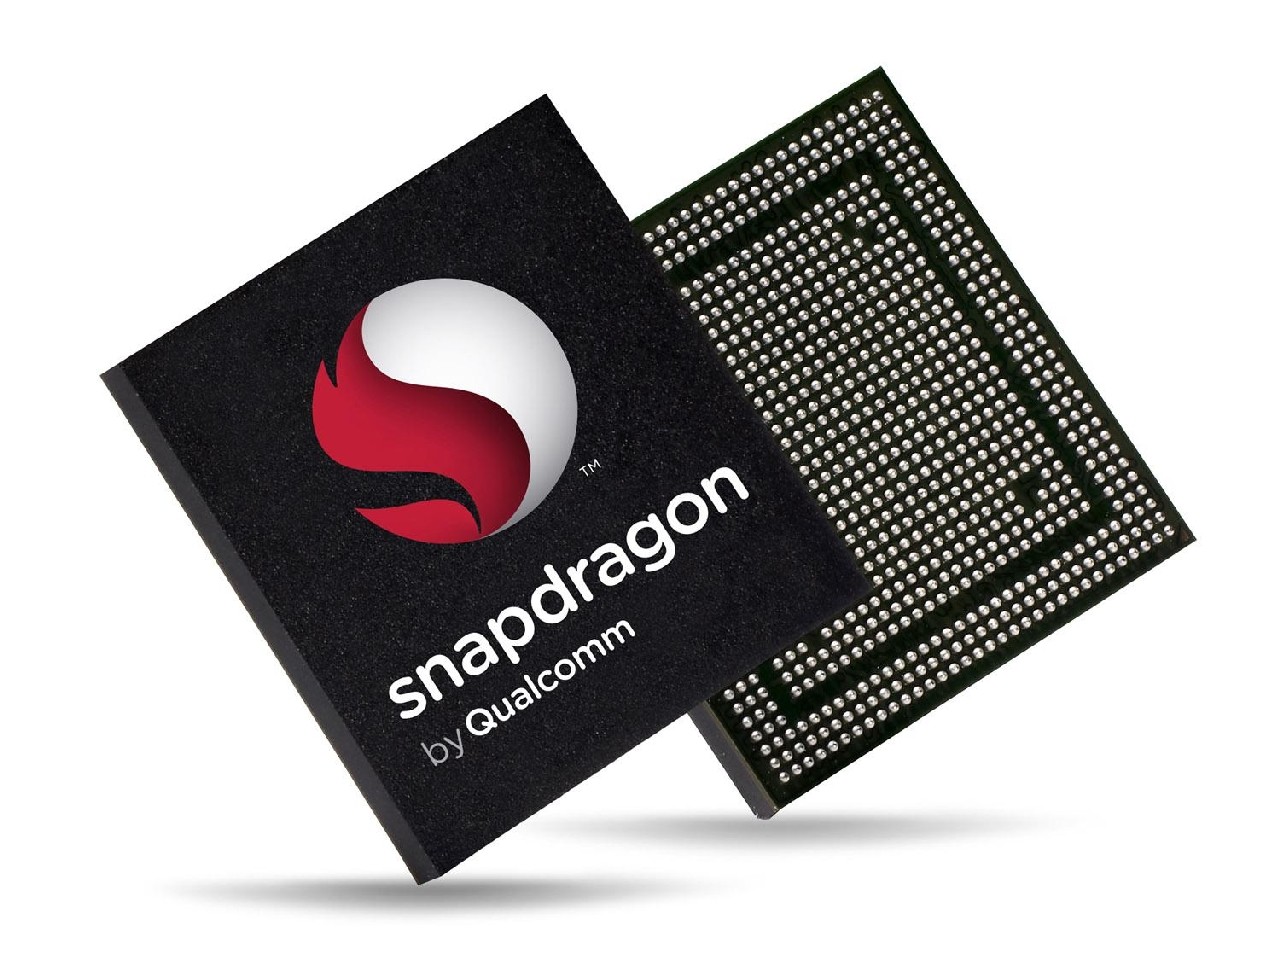 Nowe, czterordzeniowe procesory Snapdragon S4